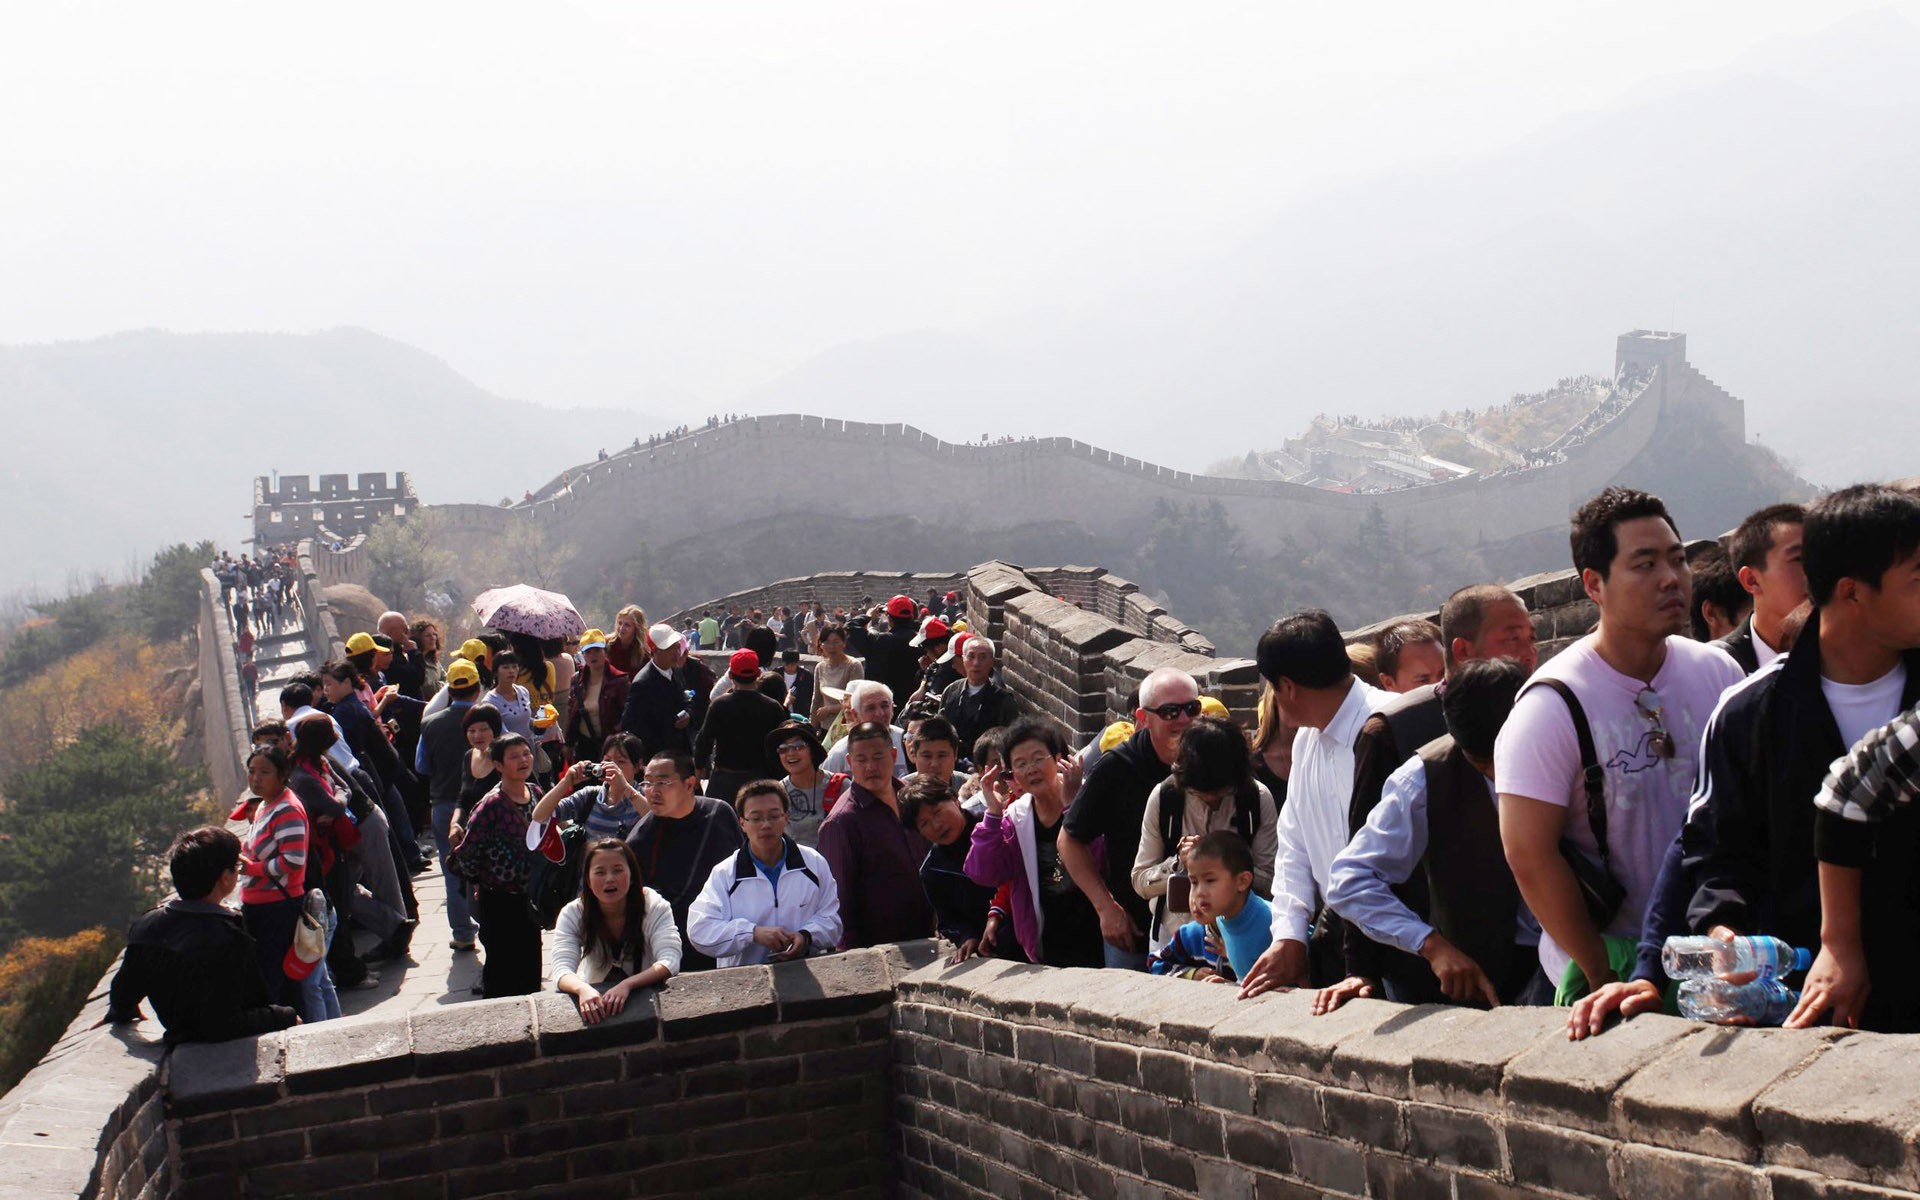 Peking Tour - Badaling Great Wall (GGC Werke) #2 - 1920x1200